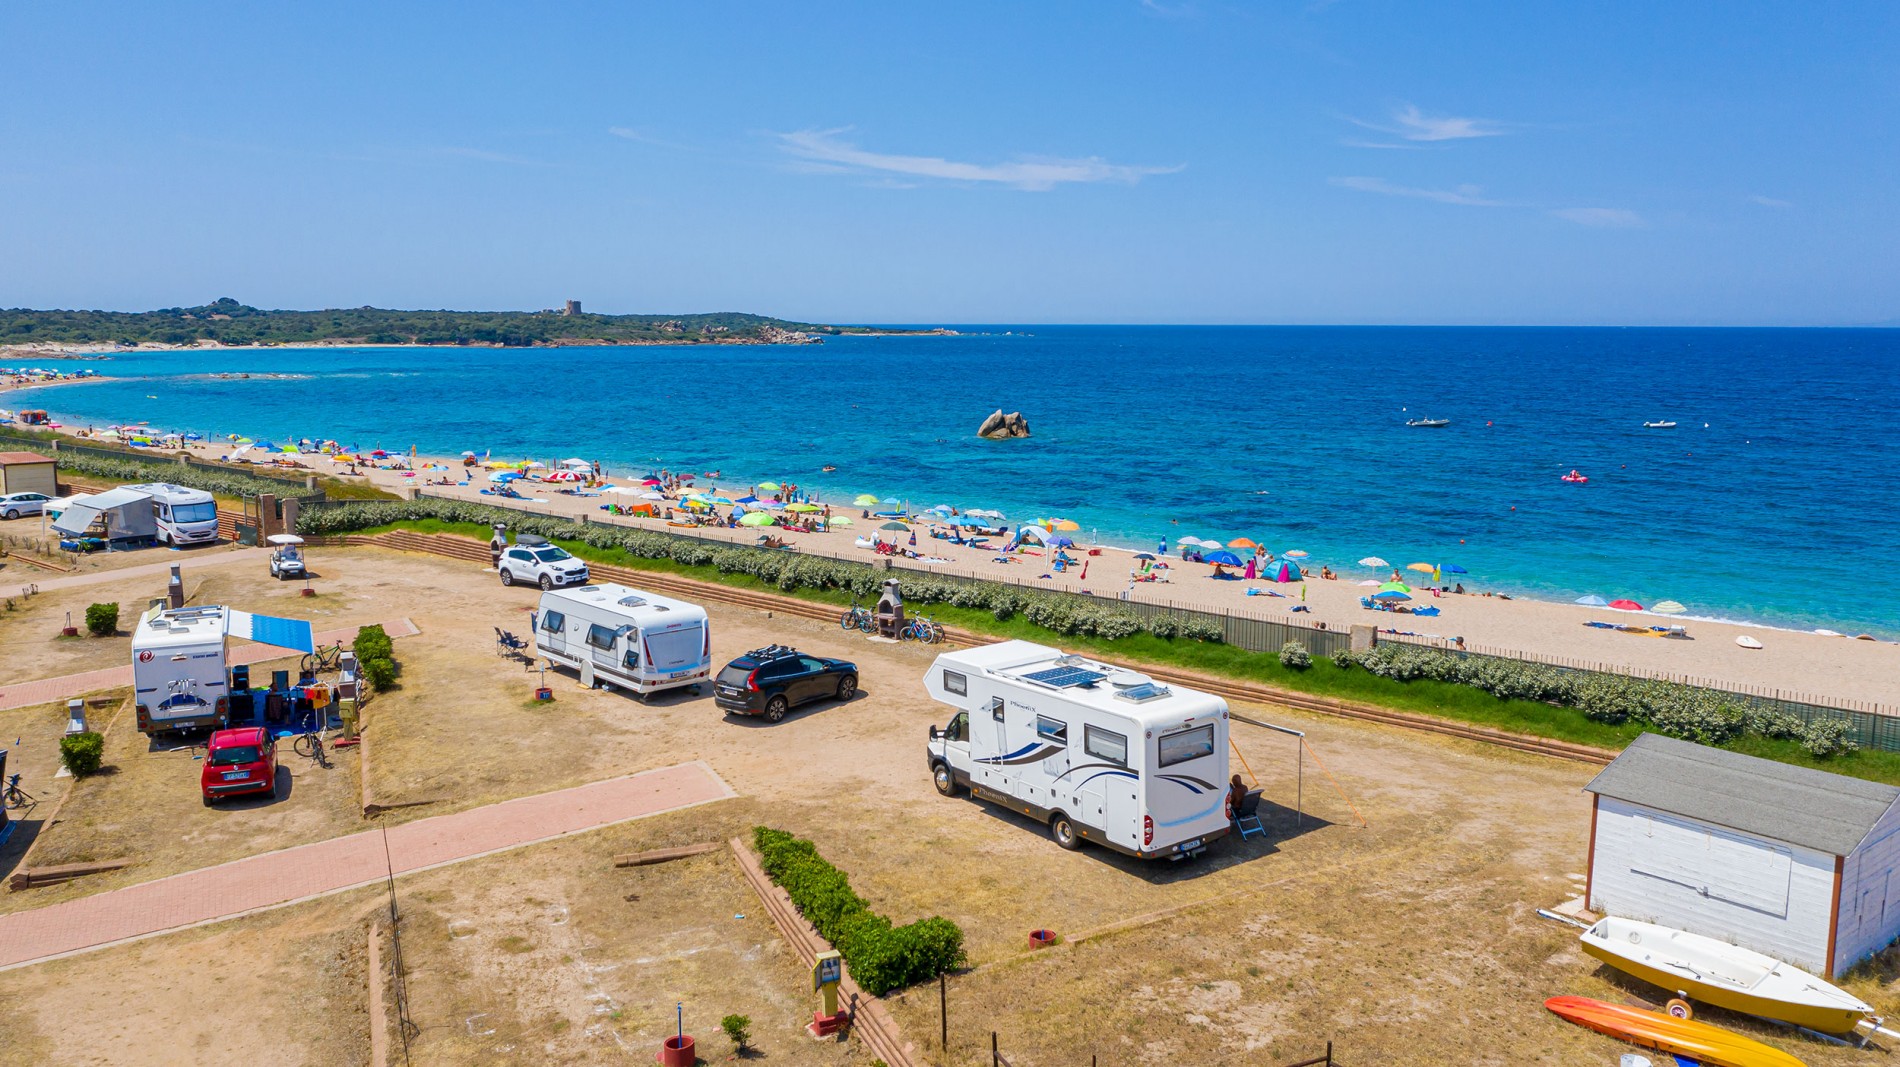 Camping Village La Tortuga - holidays in Sardinia – main image